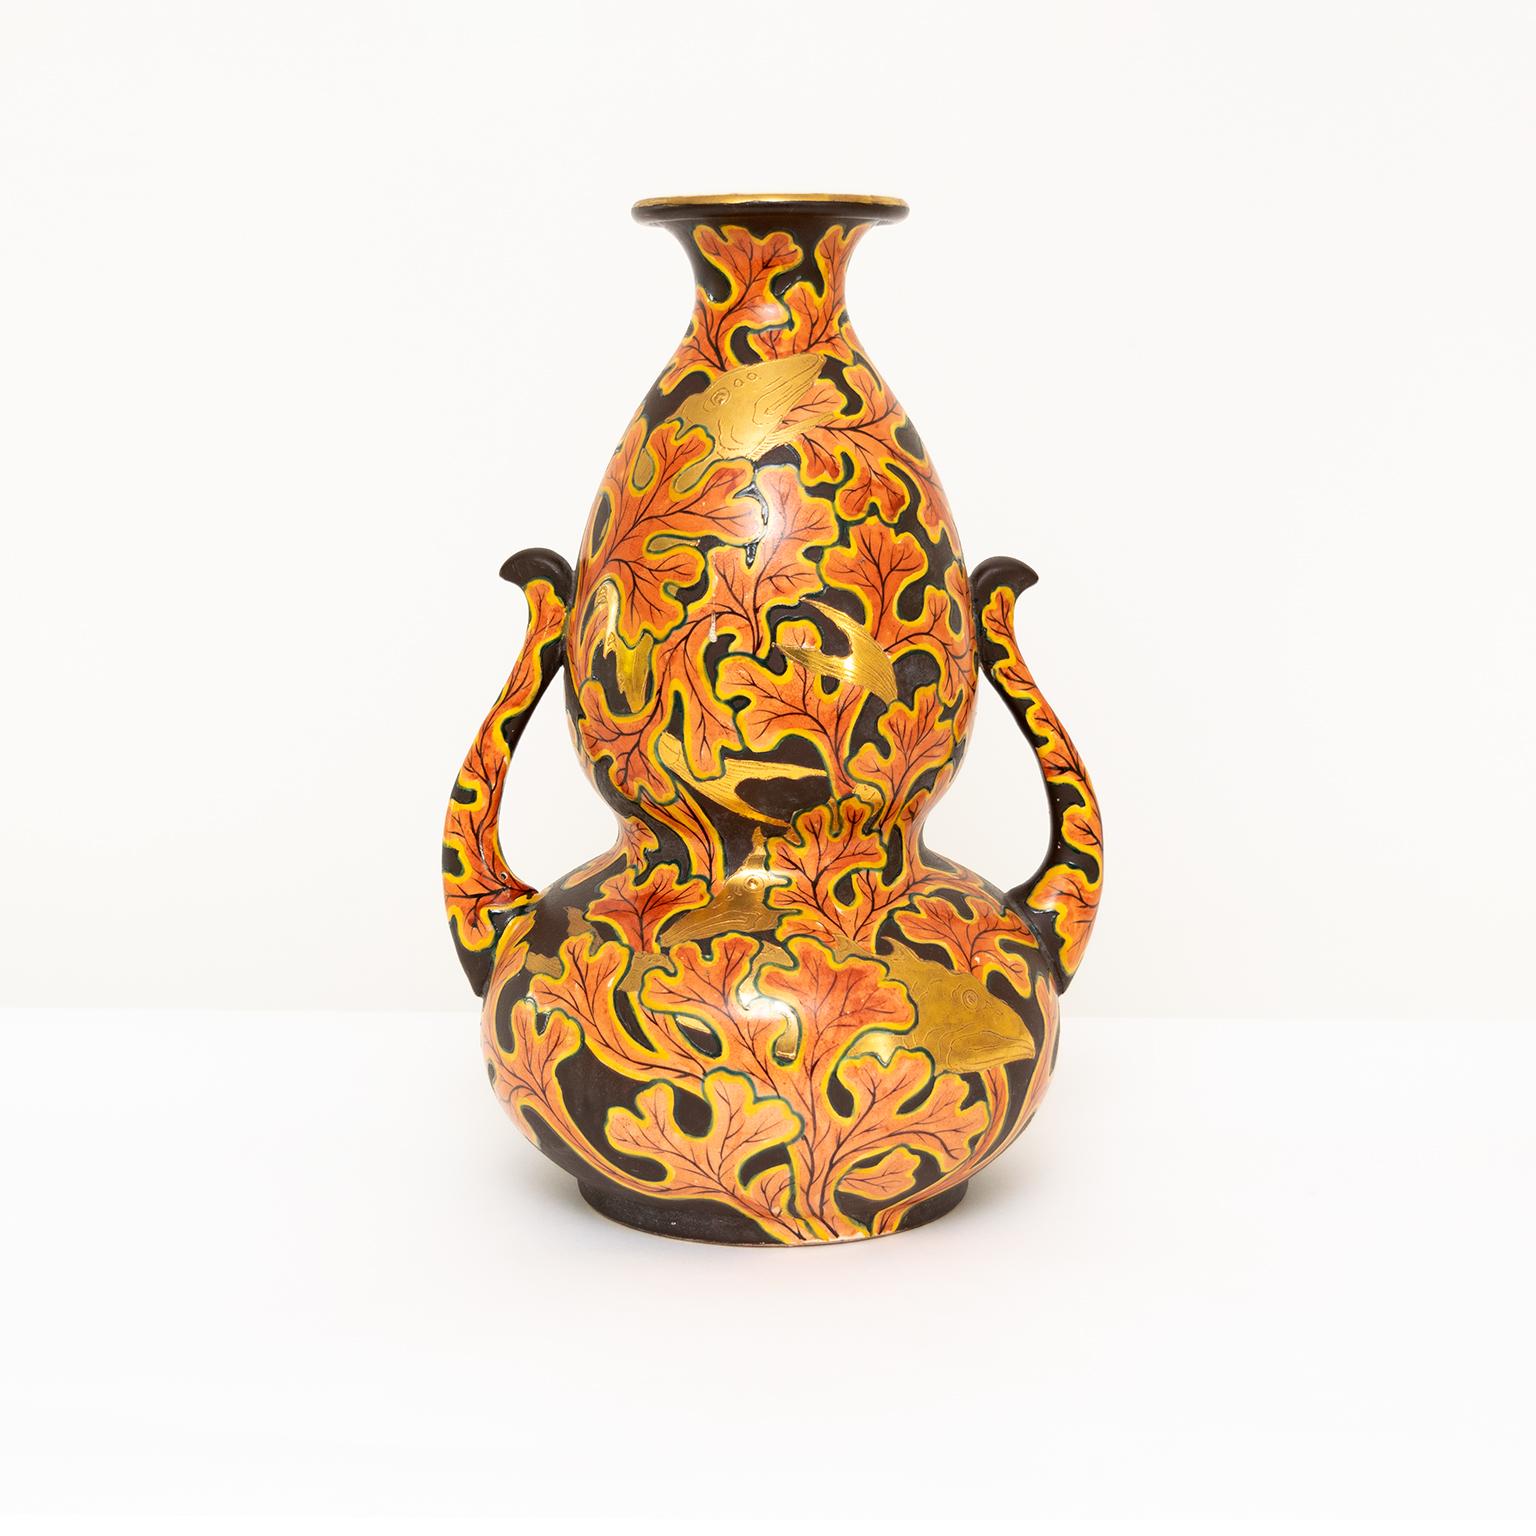 Japanische Vase aus dem späten 19. / frühen 20. Jahrhundert, Meiji-Satsuma-Vase in Form eines doppelten Kürbisses. Das Design umfasst Unterwasserpflanzen mit goldenen Koi-Karpfen auf dunkelbraunem Ton. Signiert vom Künstler auf dem Boden, sehr guter